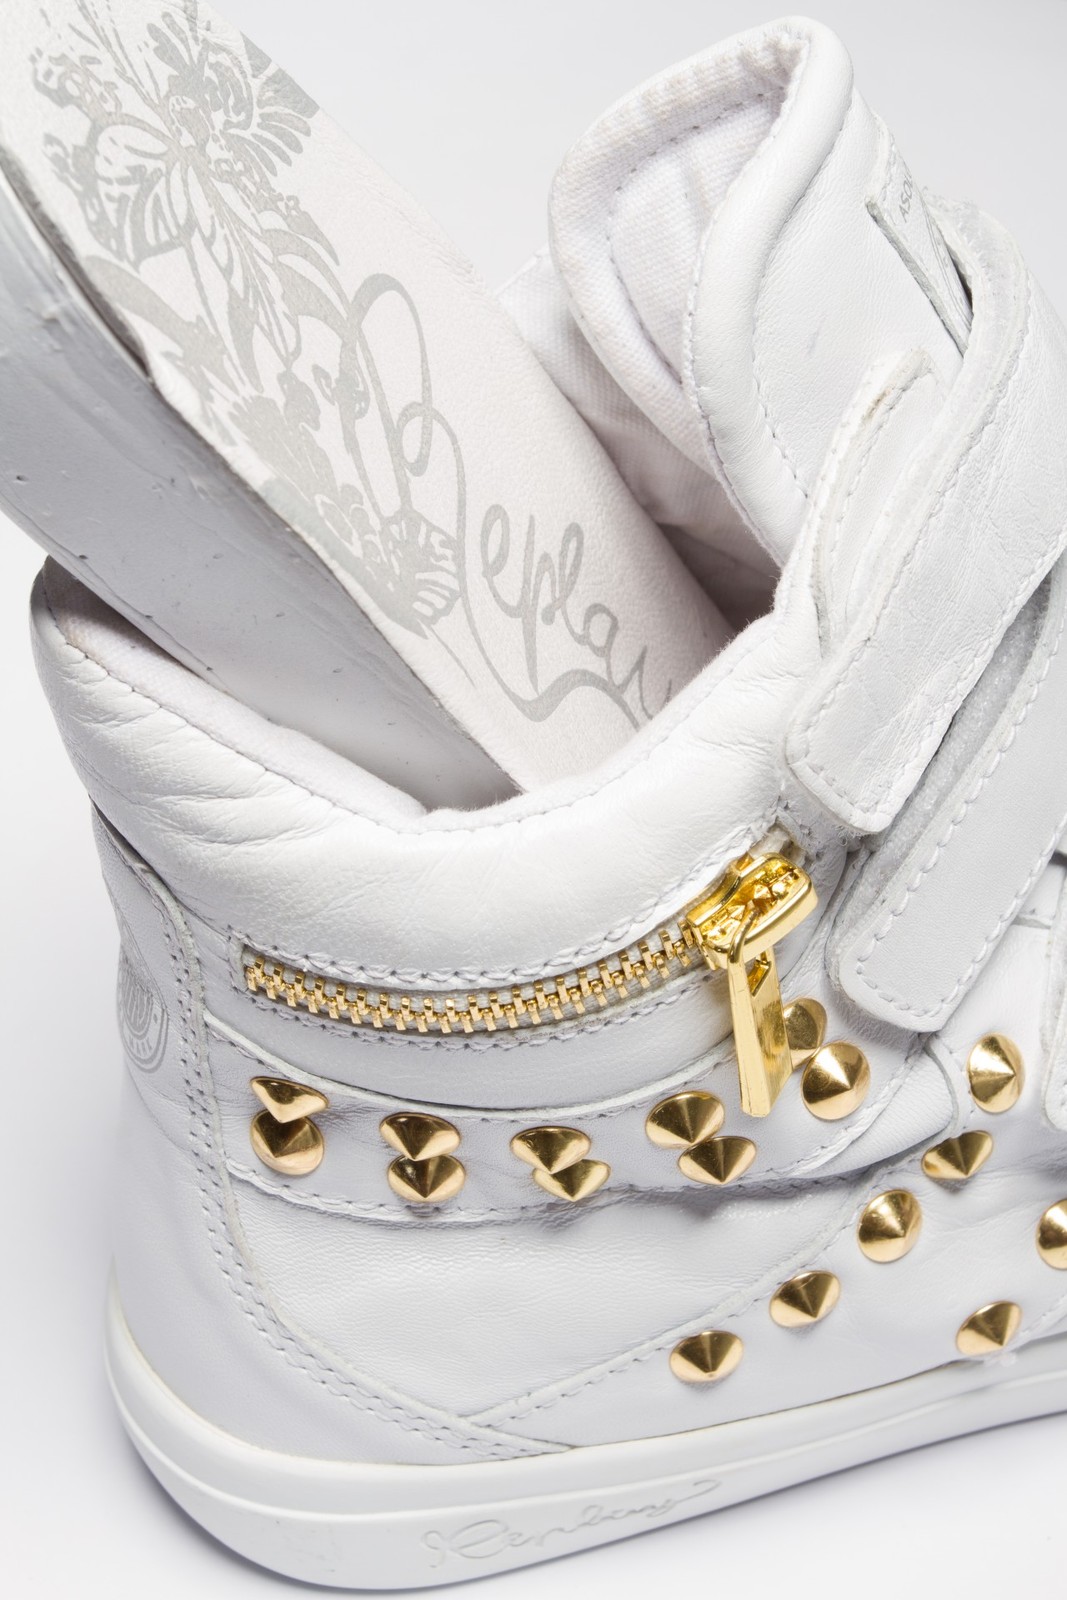 Replay fehér sneaker arany szegecsekkel 2013.4.12 #39501 fotója